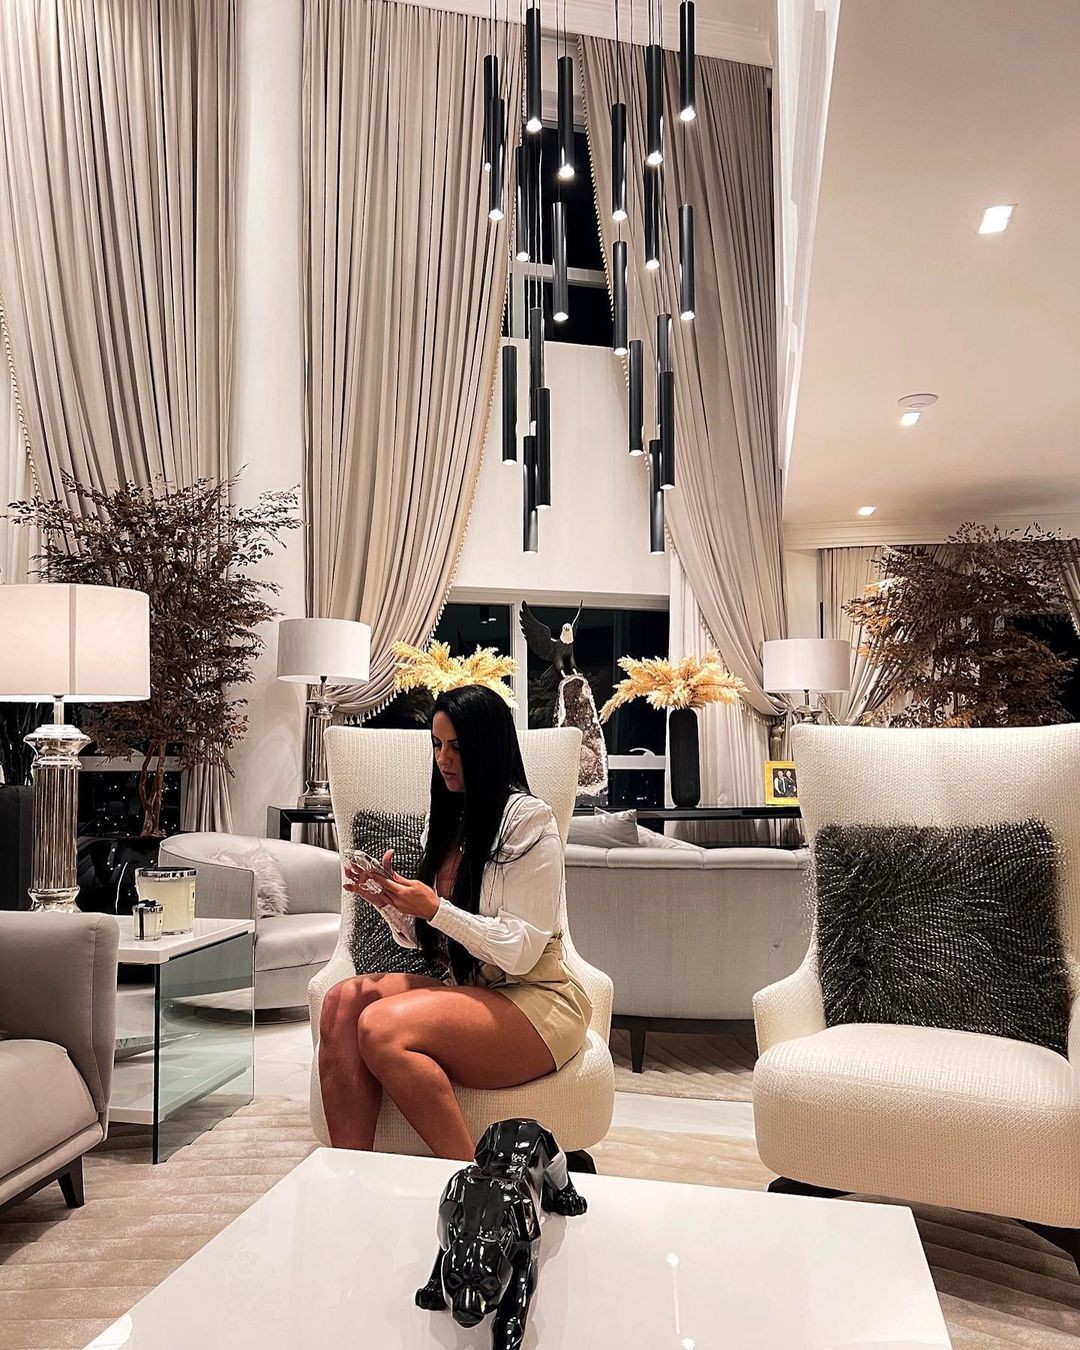 Graciele Lacerda exibe sala da mansão com Zezé (Foto: Reprodução/Instagram)